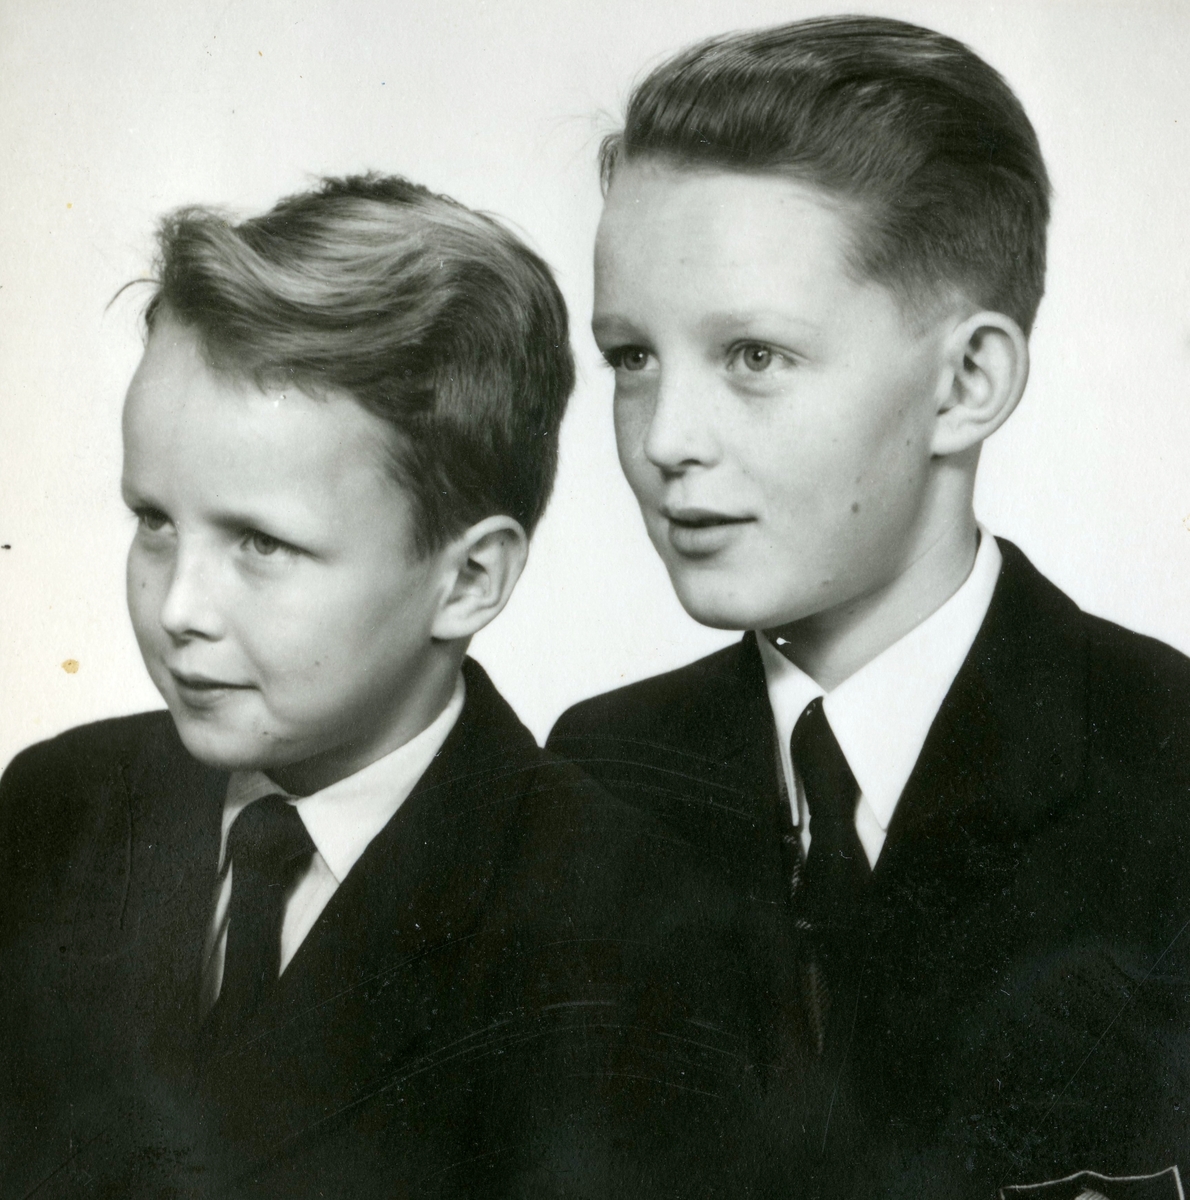 Portättfotografi av bröderna Svante och Ulf-Göran "Uffen" Ekman, okänt årtal.